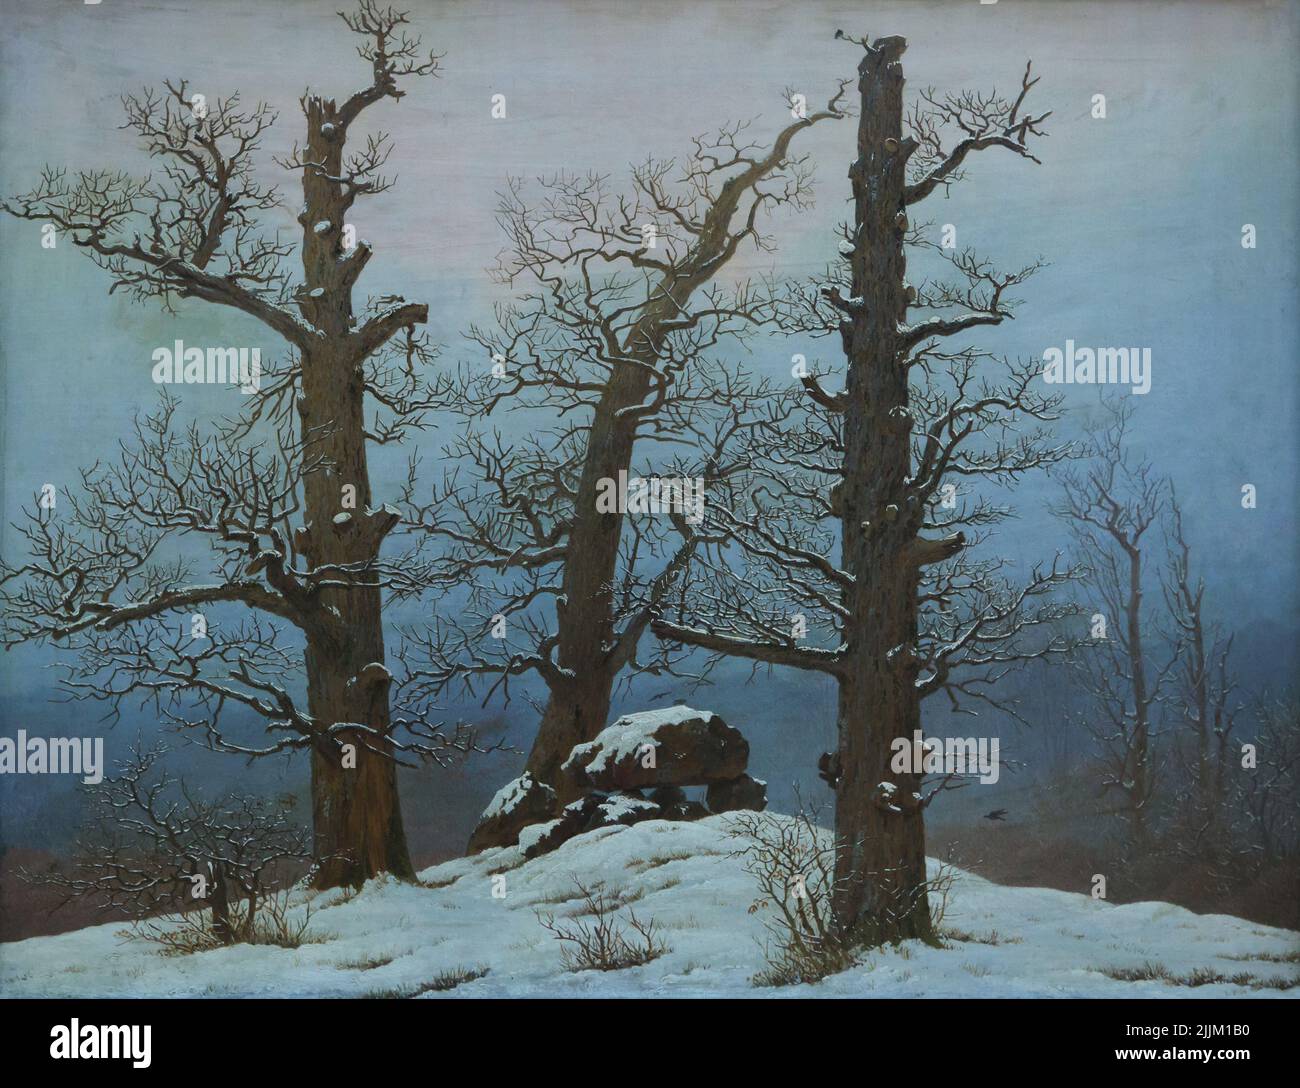 Peinture de 'Dolmen under Snow' par le peintre allemand de paysage romantique Caspar David Friedrich (1807) exposé dans le Gаlеriе NribuiuridMeenevolistehr (Nevolw Маstеrs Gаllеry) dans le Аlbеrtinum dans Drniedsdnietenn, Gеrmаny. Banque D'Images